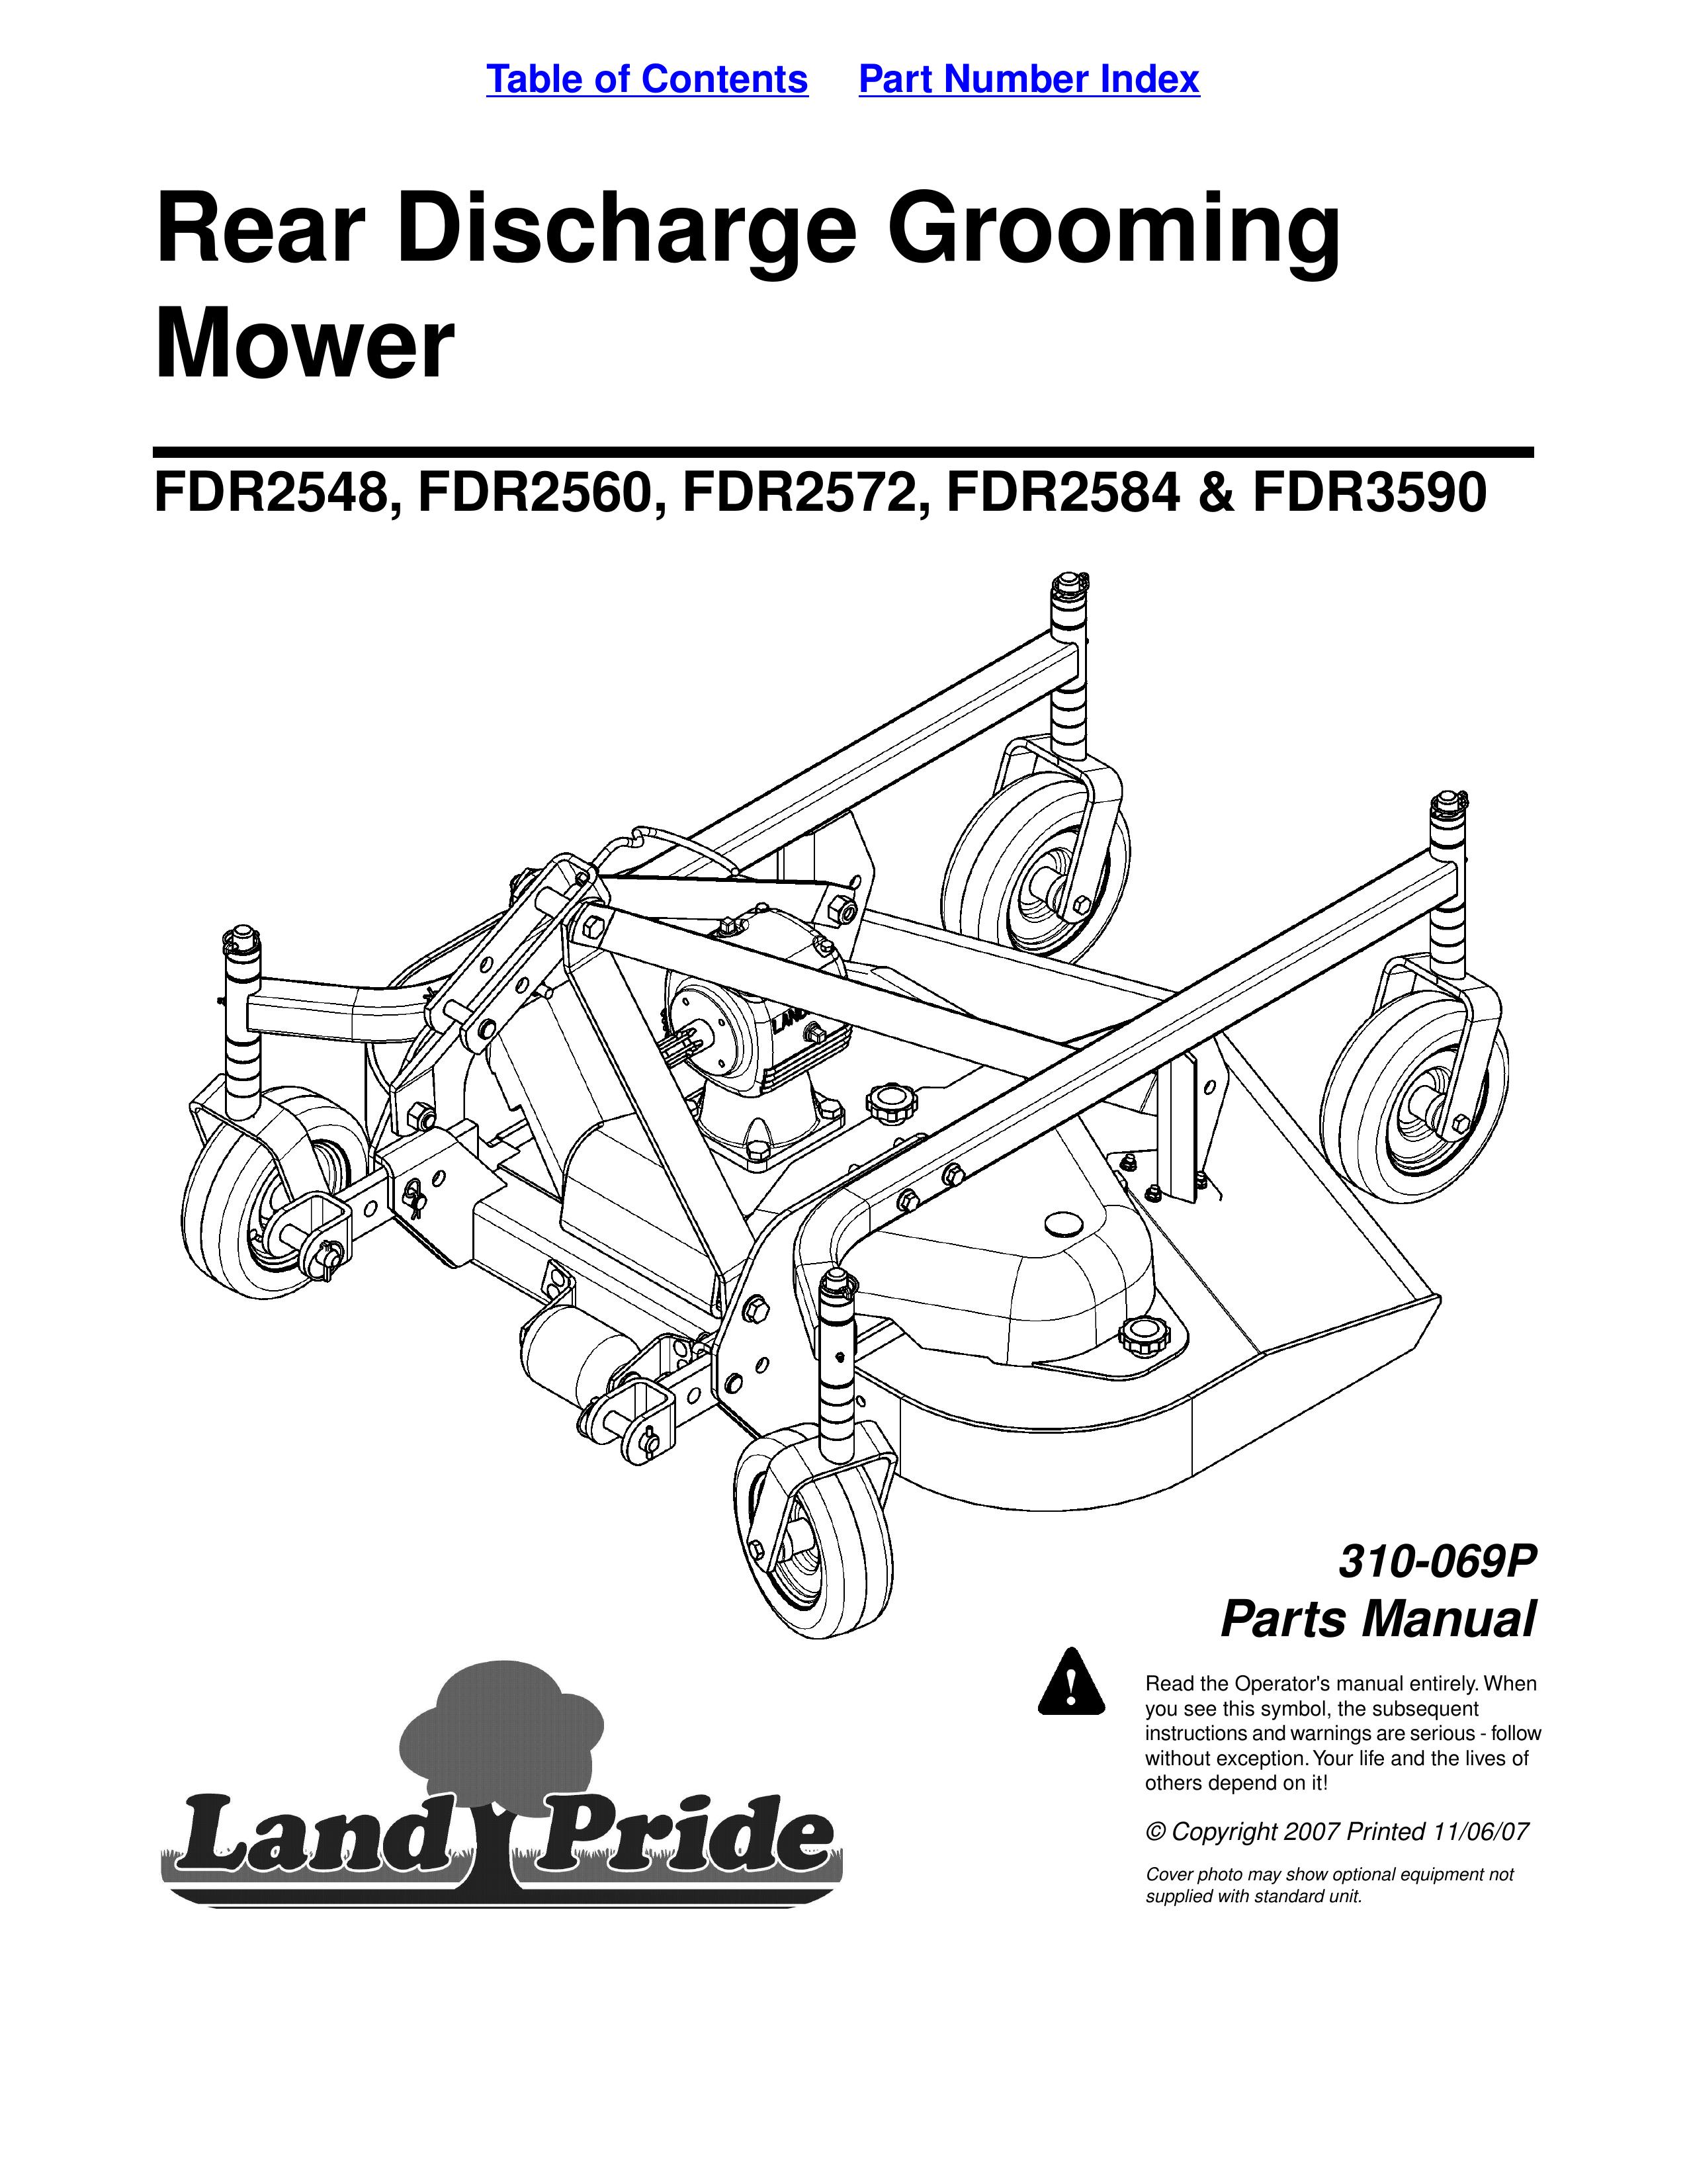 Land Pride 2584 Lawn Mower User Manual